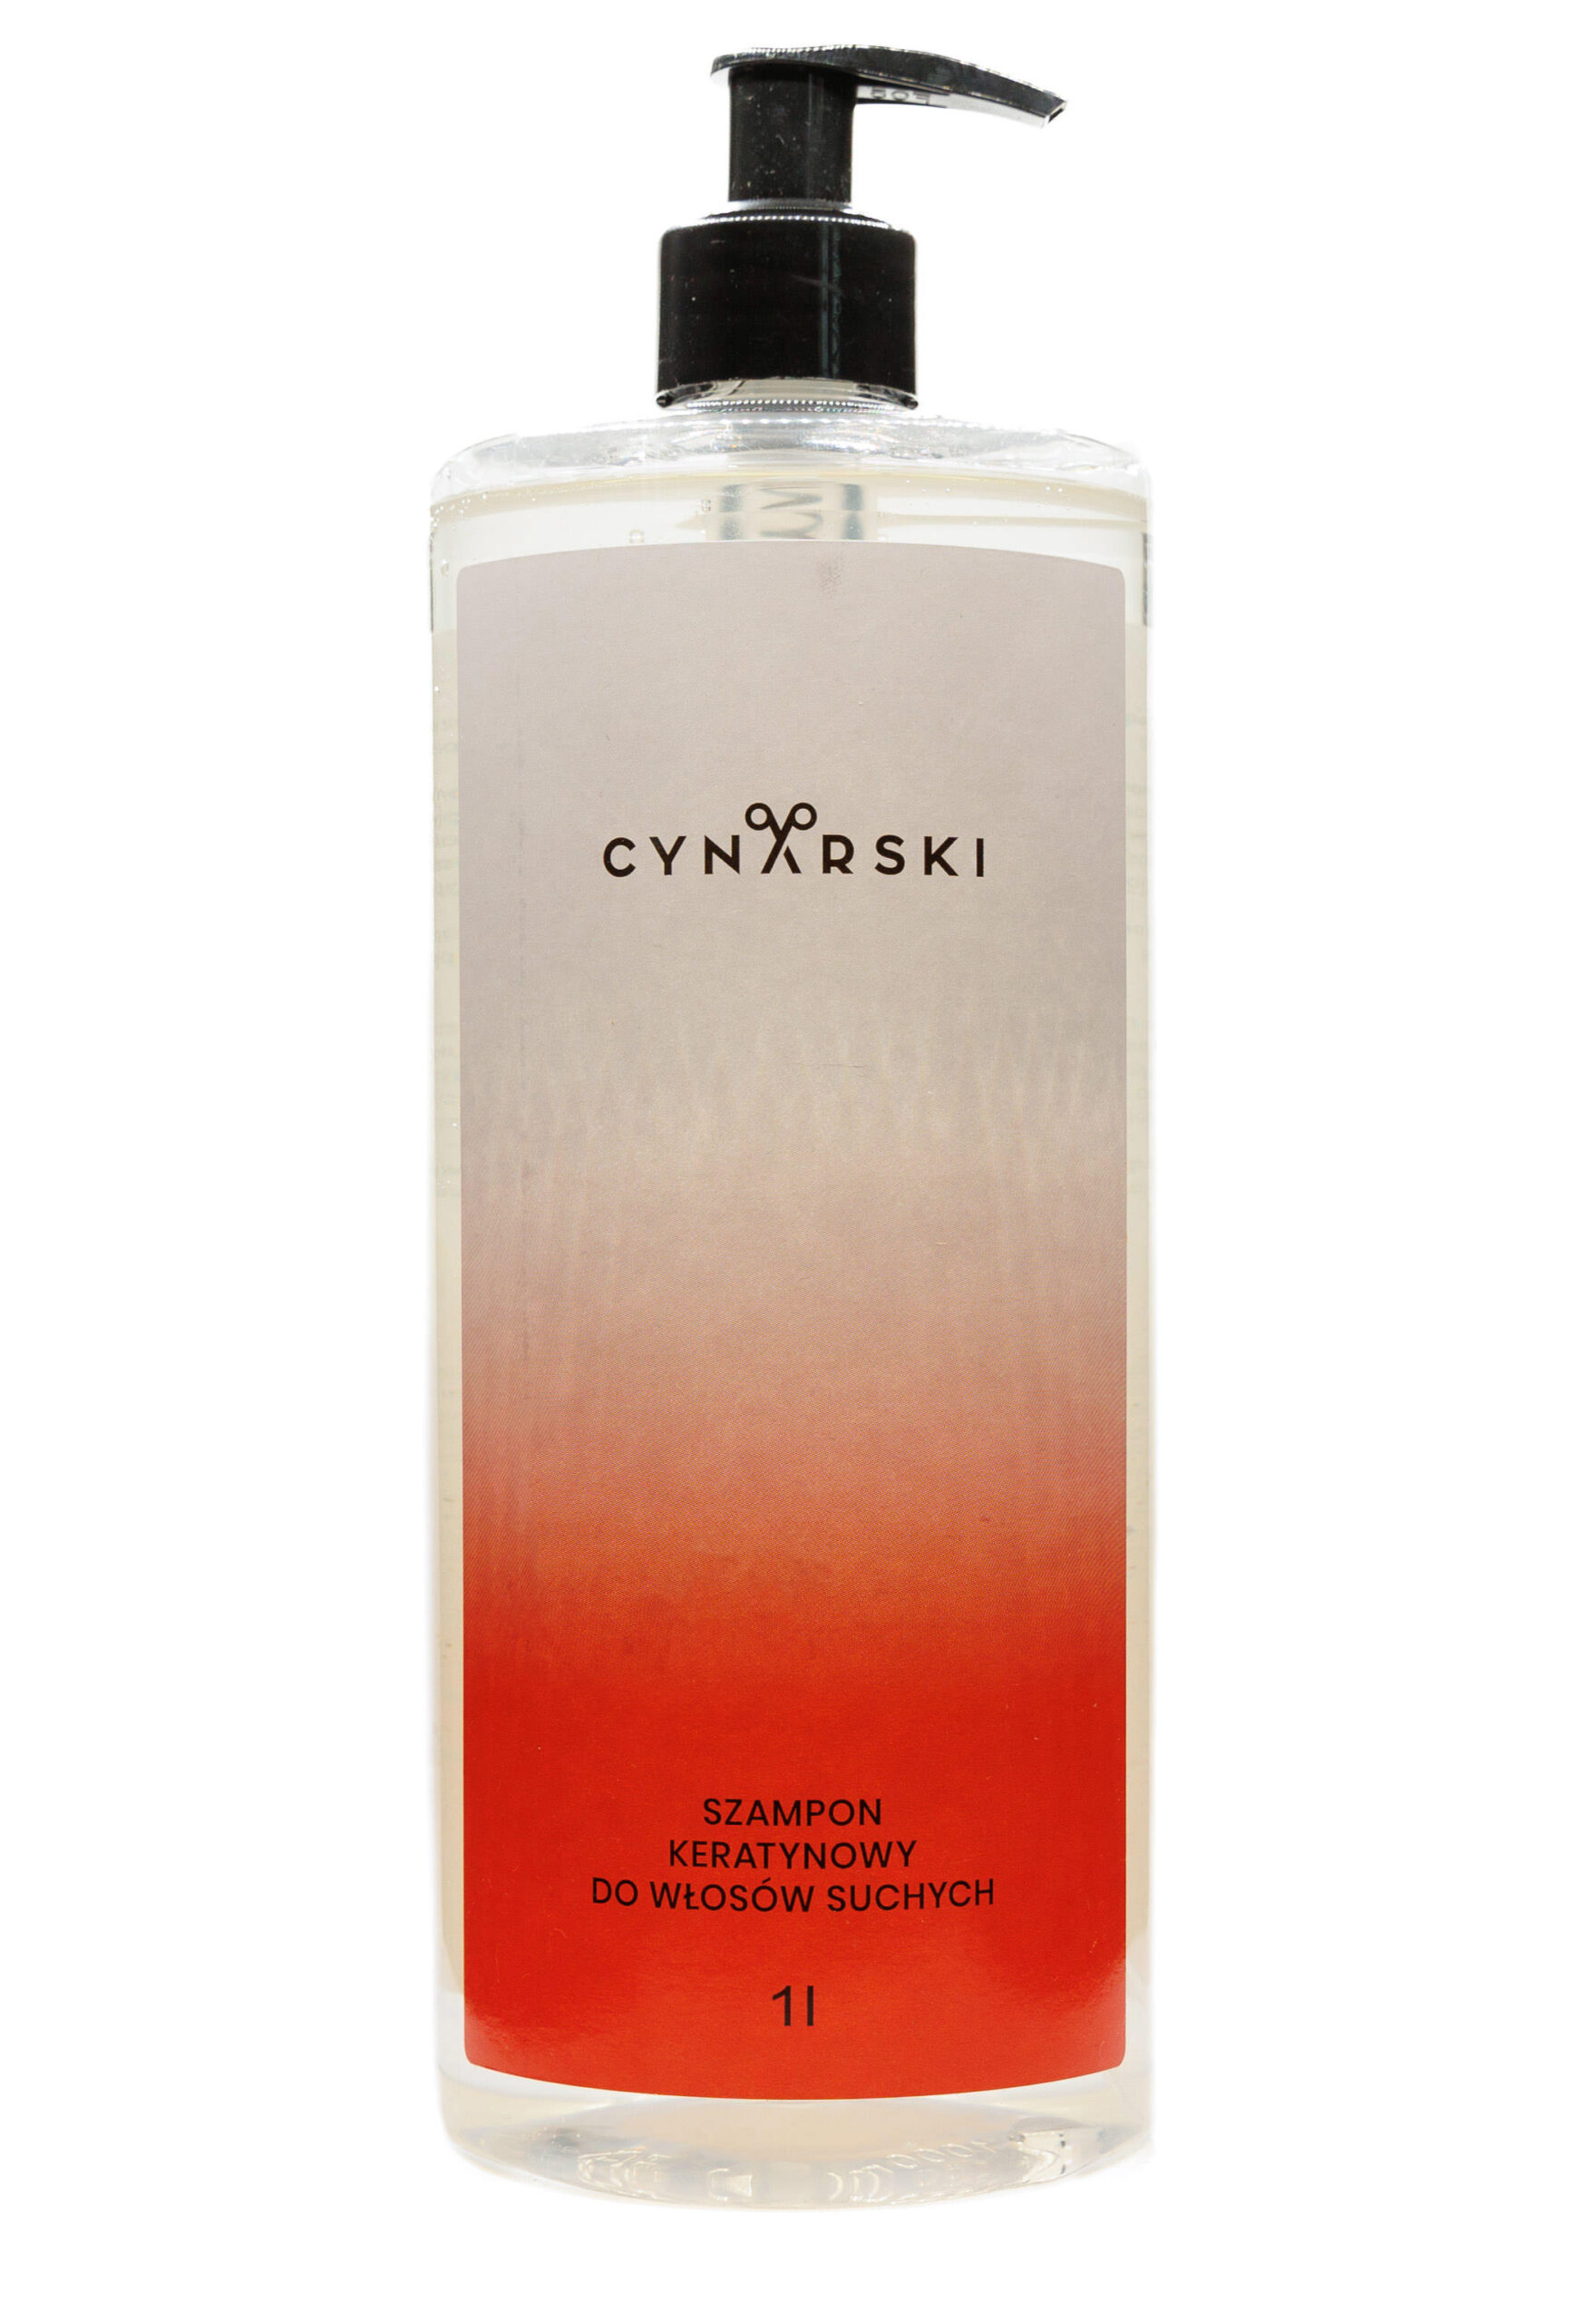 szampon cynarski